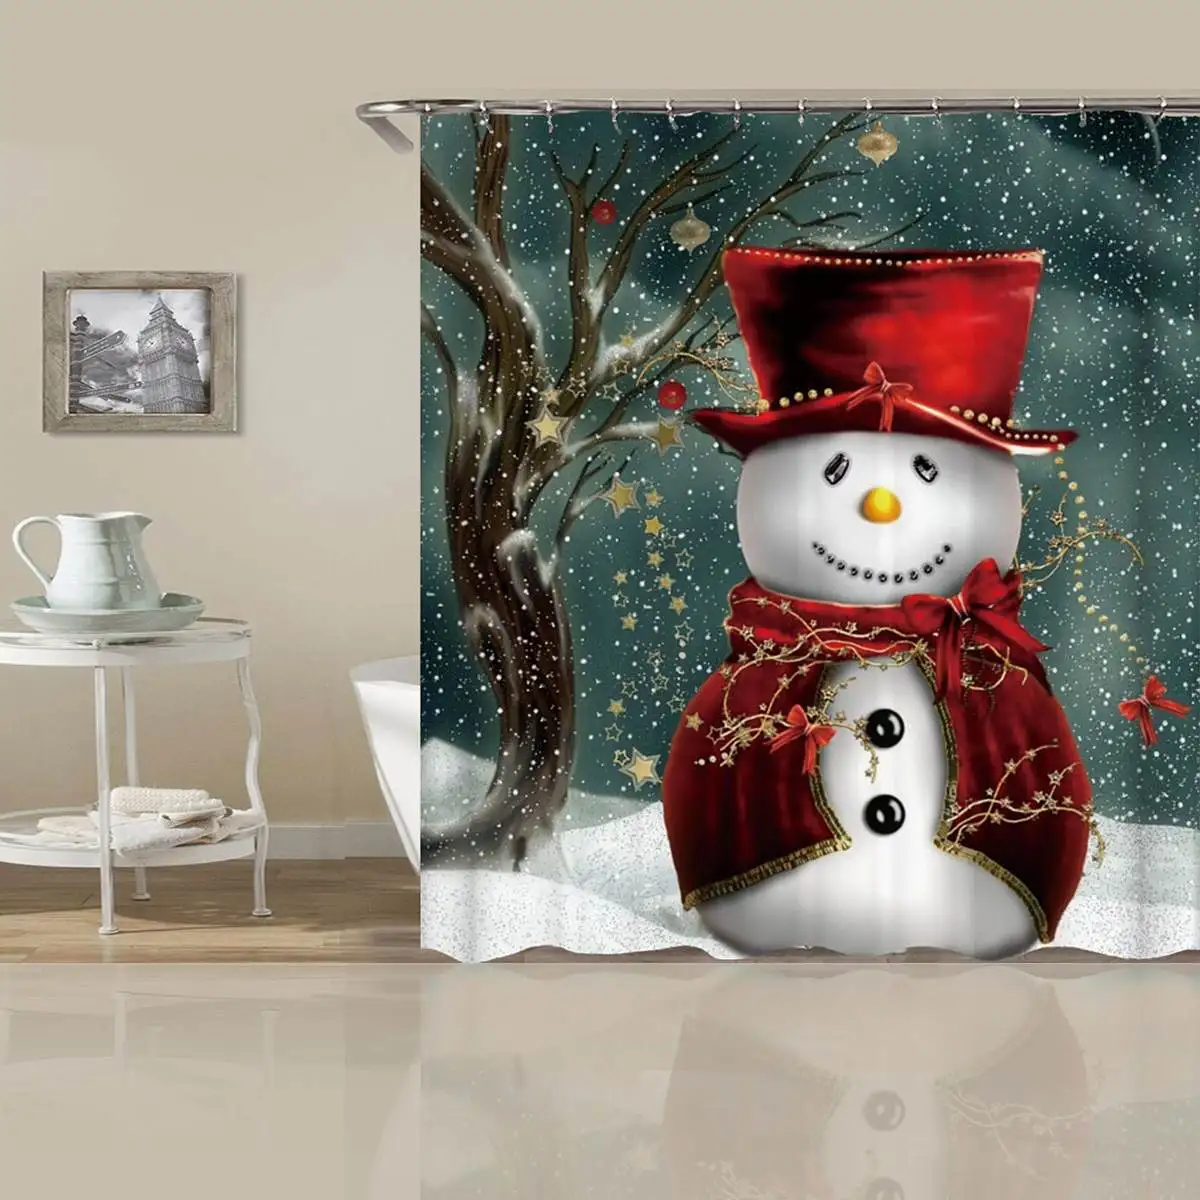 Счастливого Рождества Ванная комната комплект, принт снеговик, Дед Мороз Санта колокол с изображением лося, Водонепроницаемый душ Шторы коврик для крышки унитаза Нескользящие ковер - Цвет: 03 Curtains